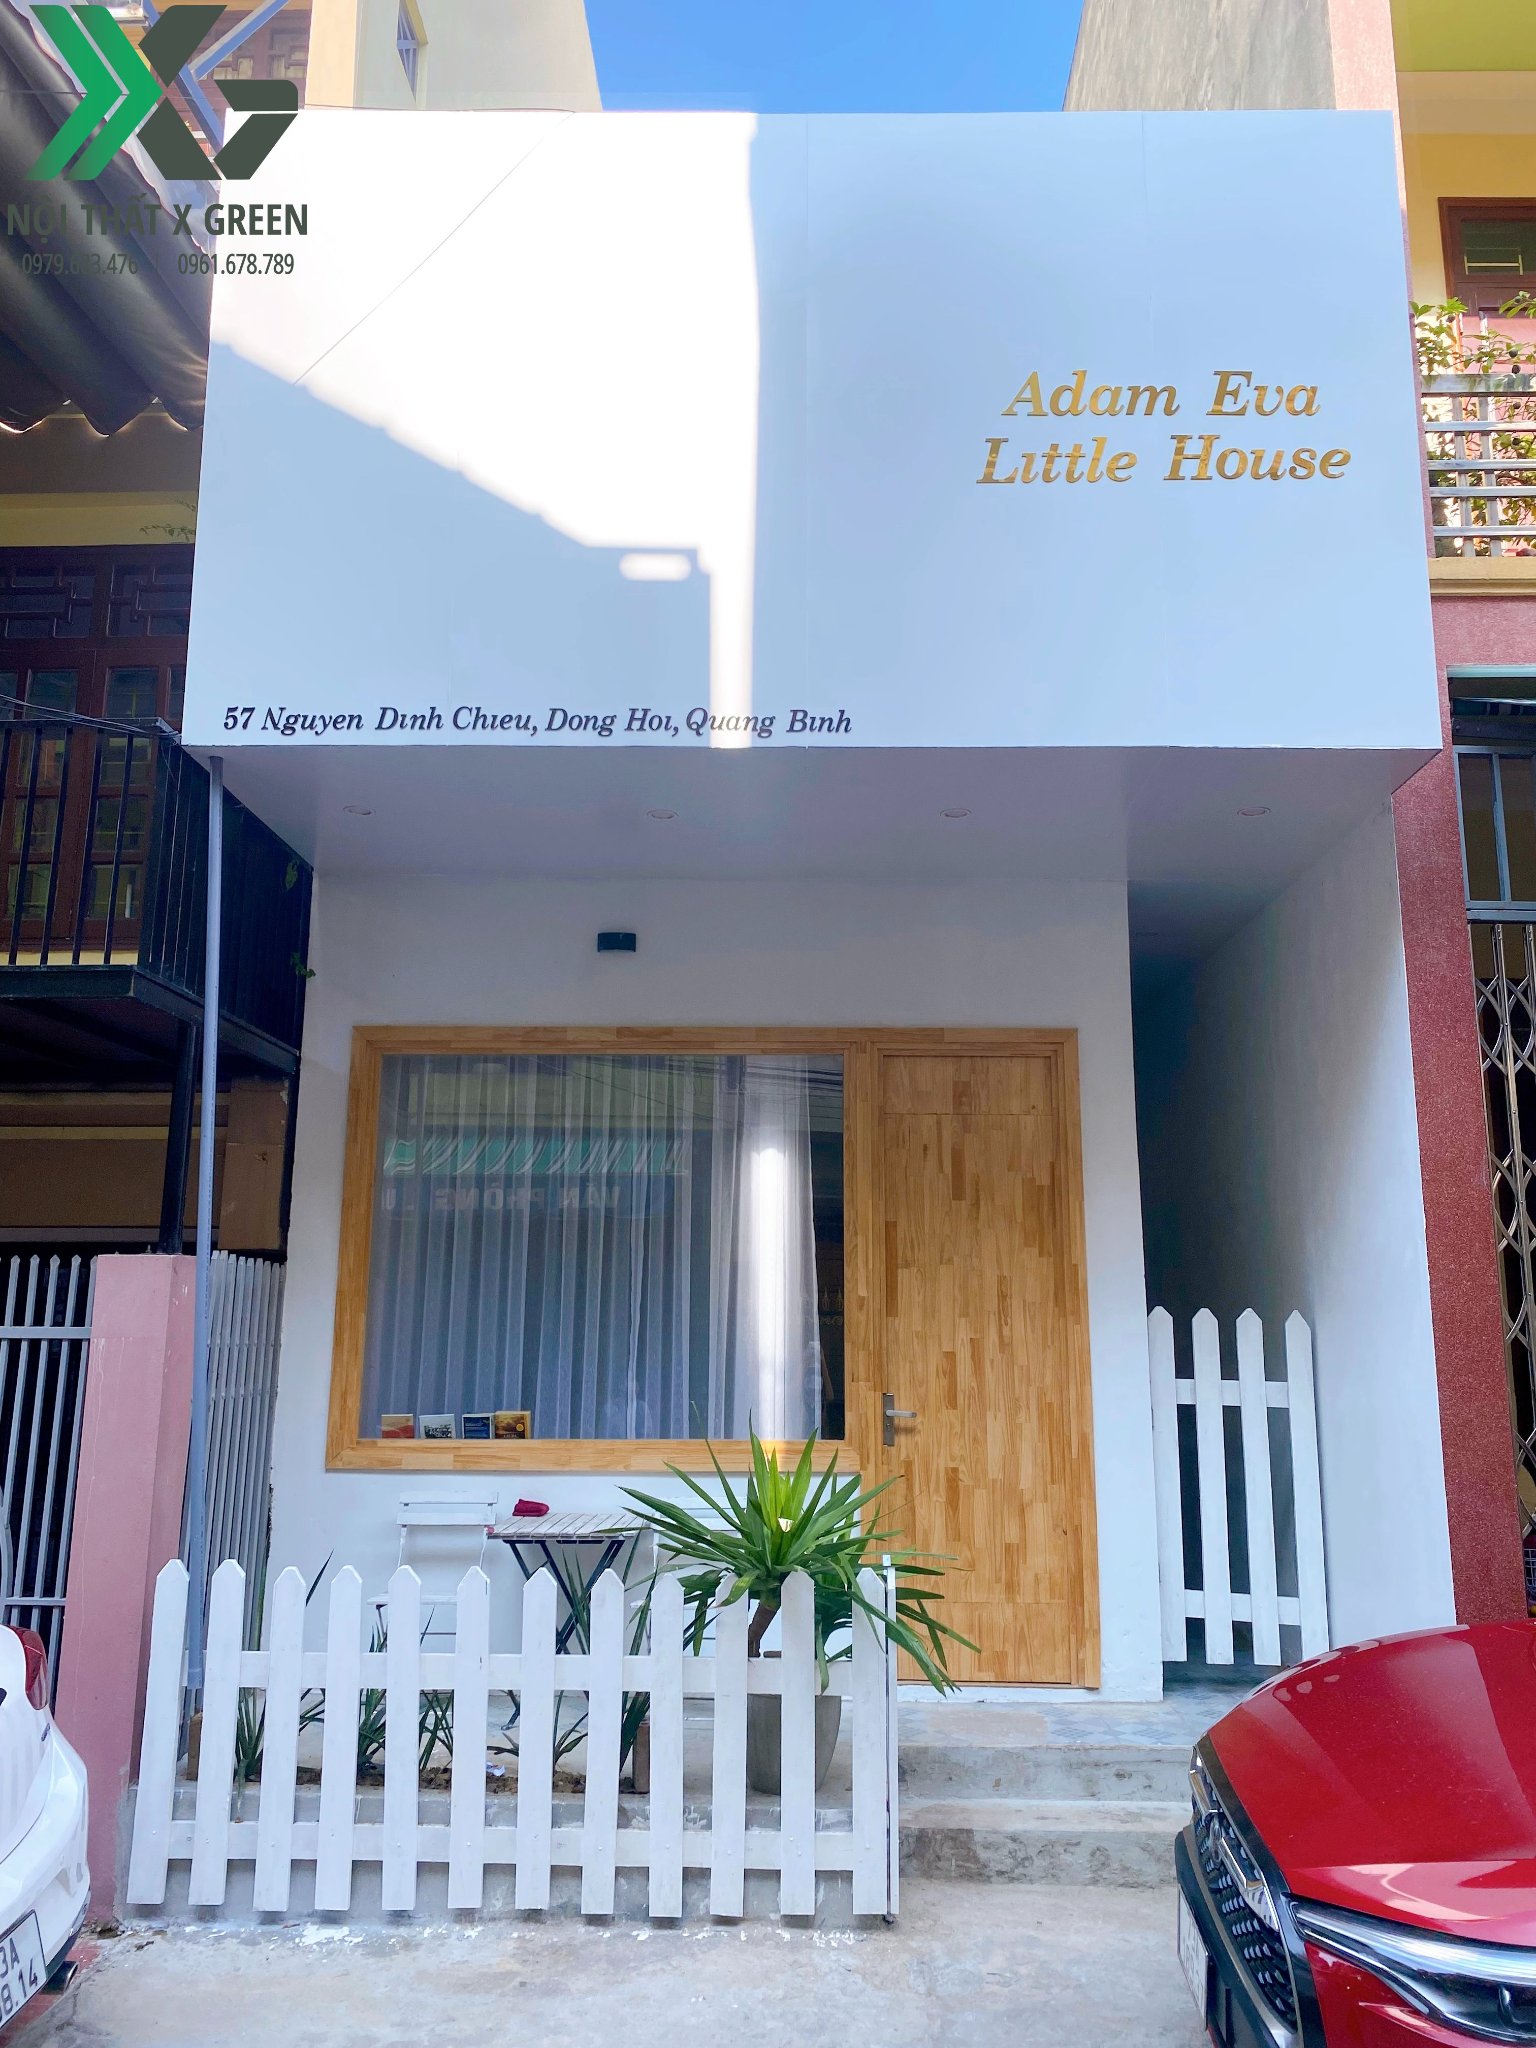 Bàn giao công trình hoàn thiện “Adam Eva Little House Homestay”